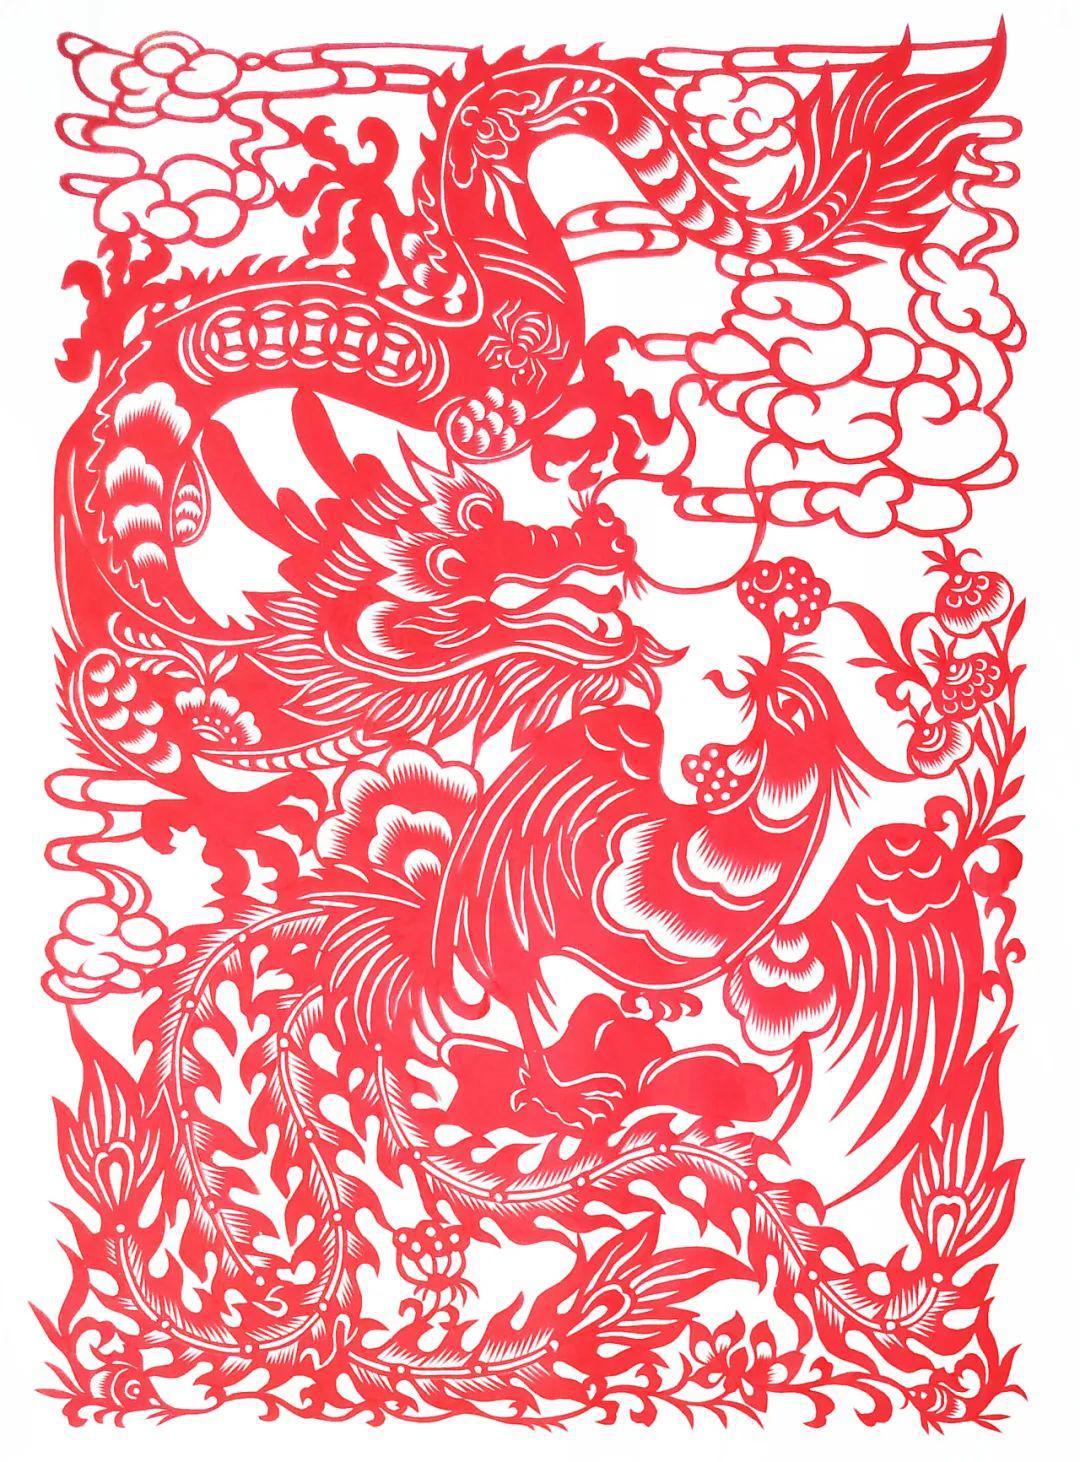 中国民间剪纸微刊《百年献瑞迎新年》全国龙文化剪纸精品展览 图56